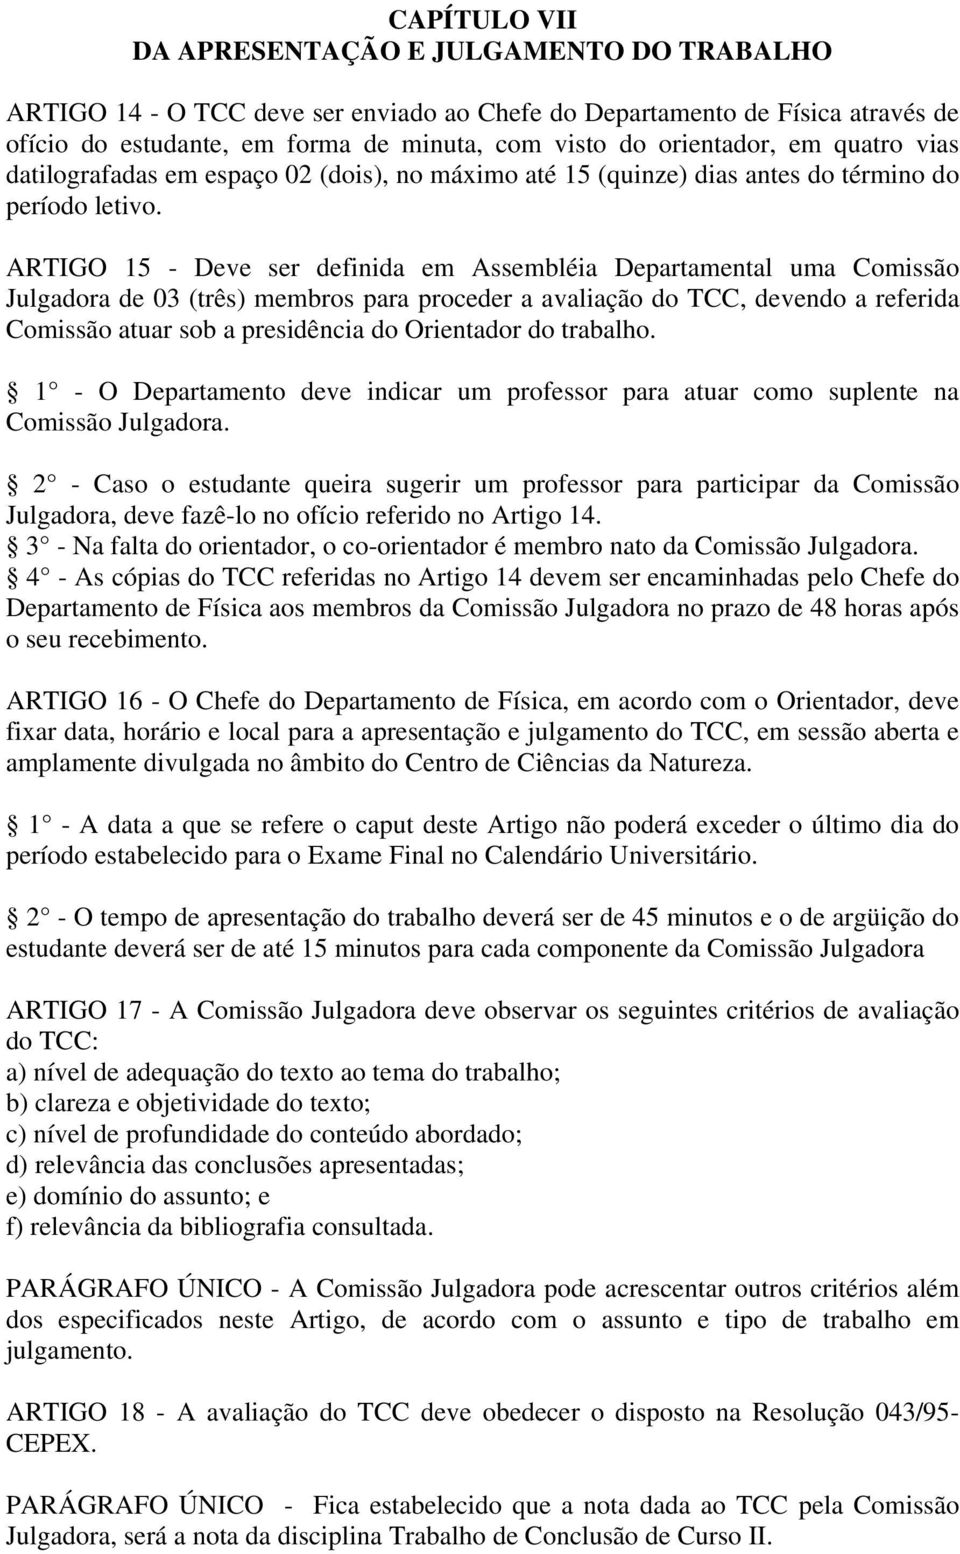 ARTIGO 15 - Deve ser definida em Assembléia Departamental uma Comissão Julgadora de 03 (três) membros para proceder a avaliação do TCC, devendo a referida Comissão atuar sob a presidência do